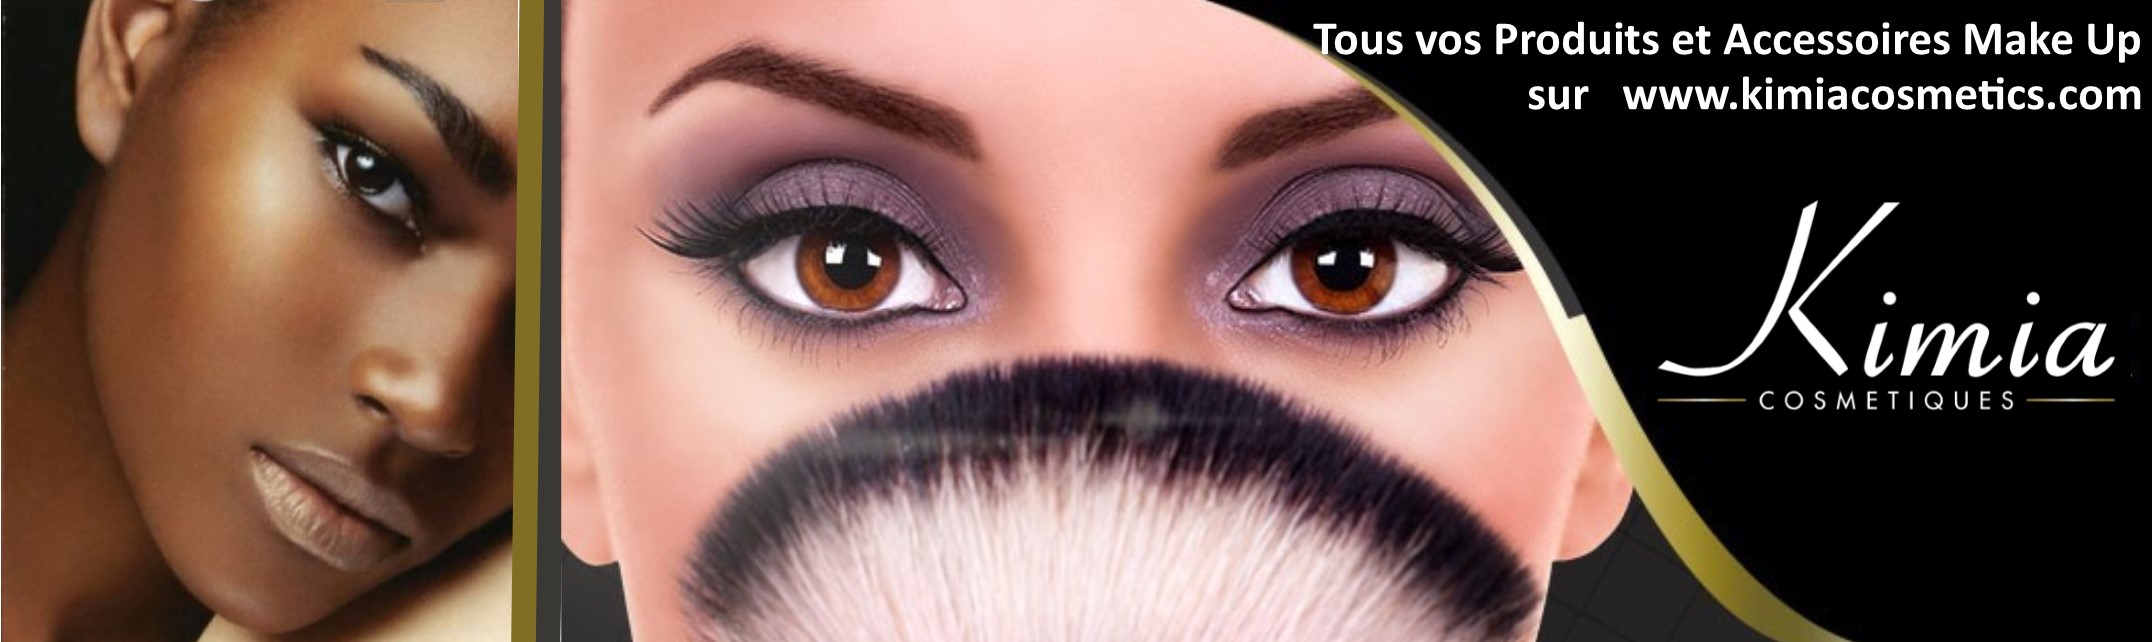 sourcils-make-up